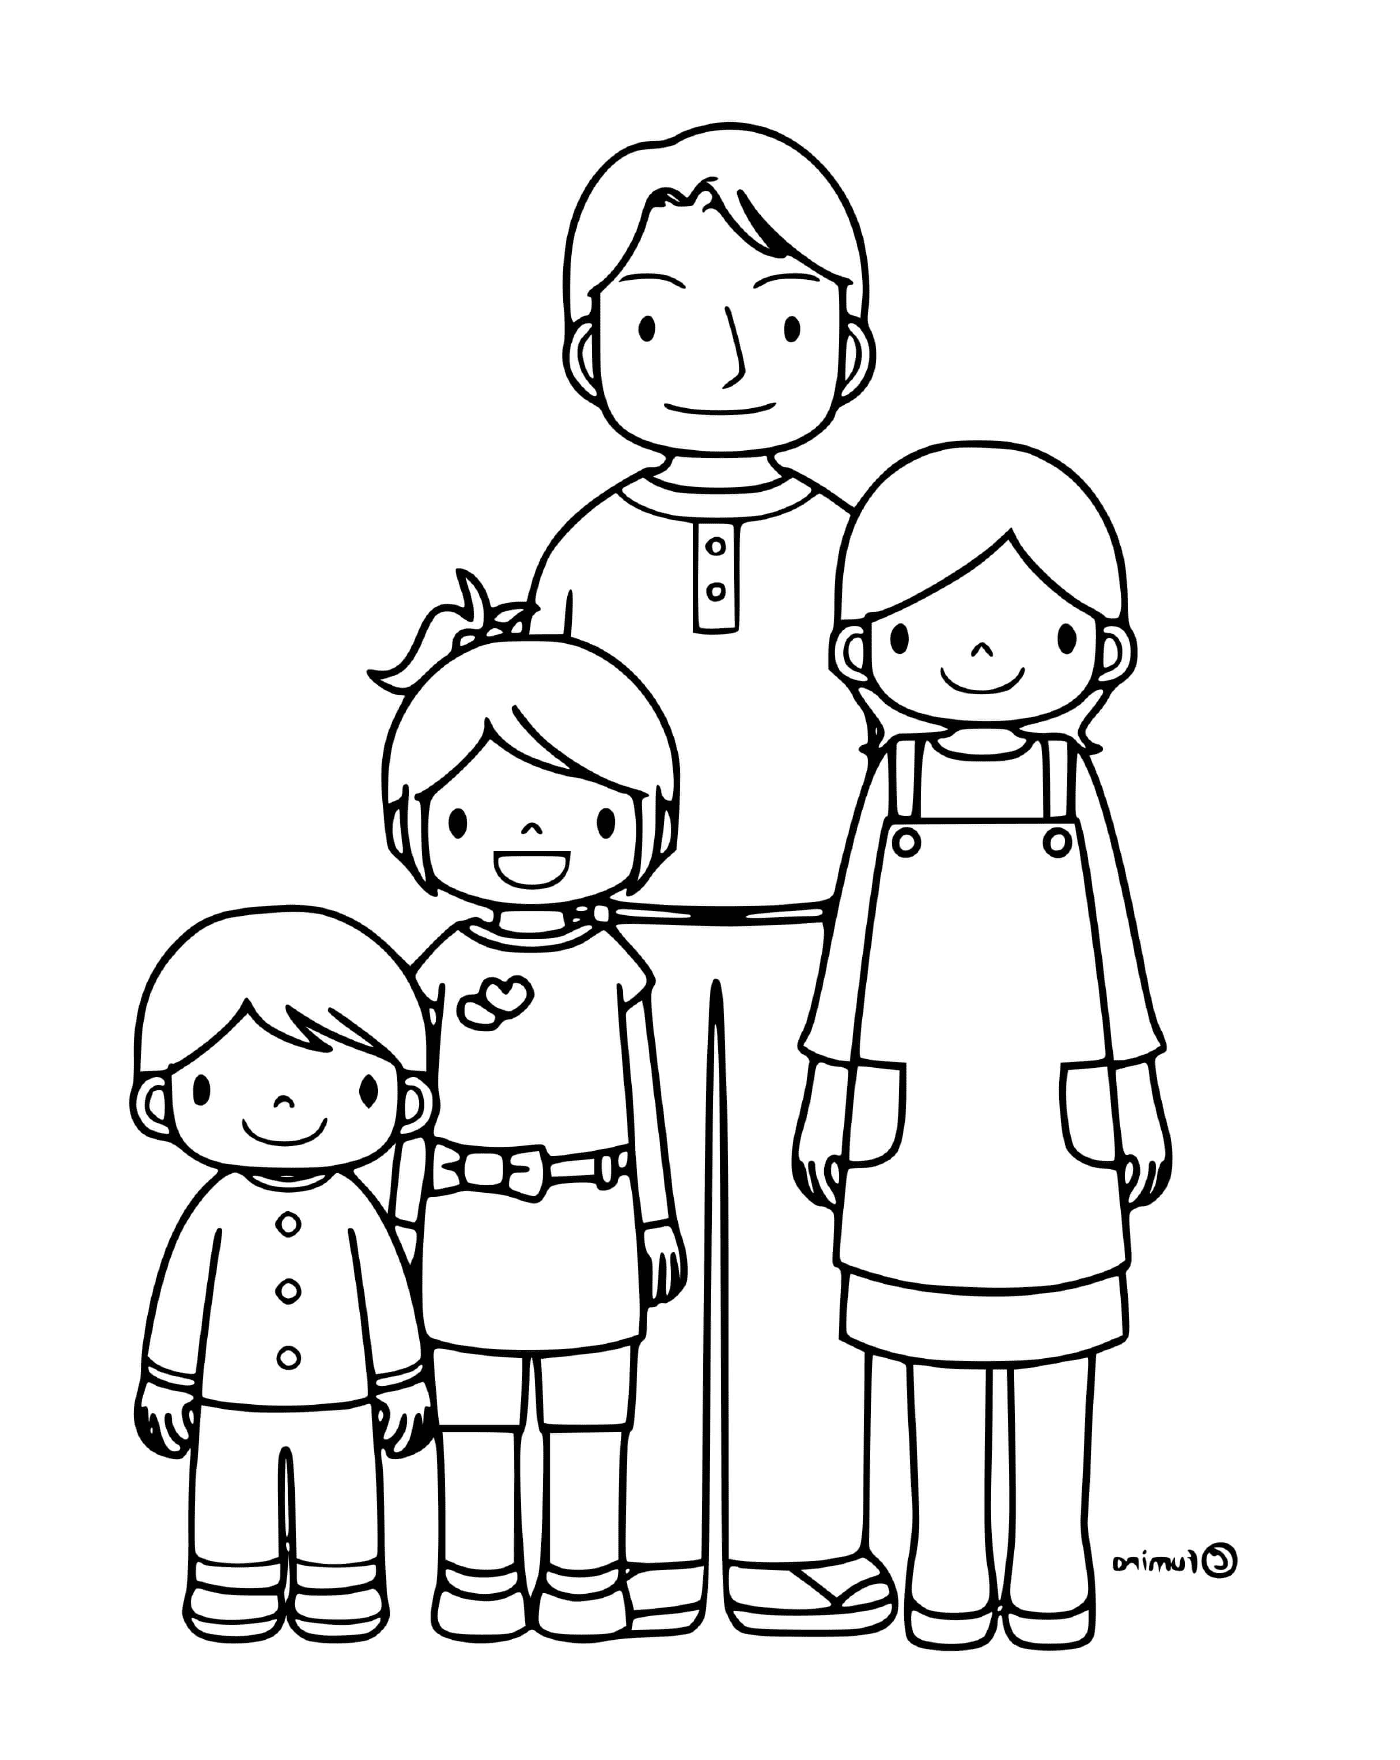  चार बच्चों का परिवार 